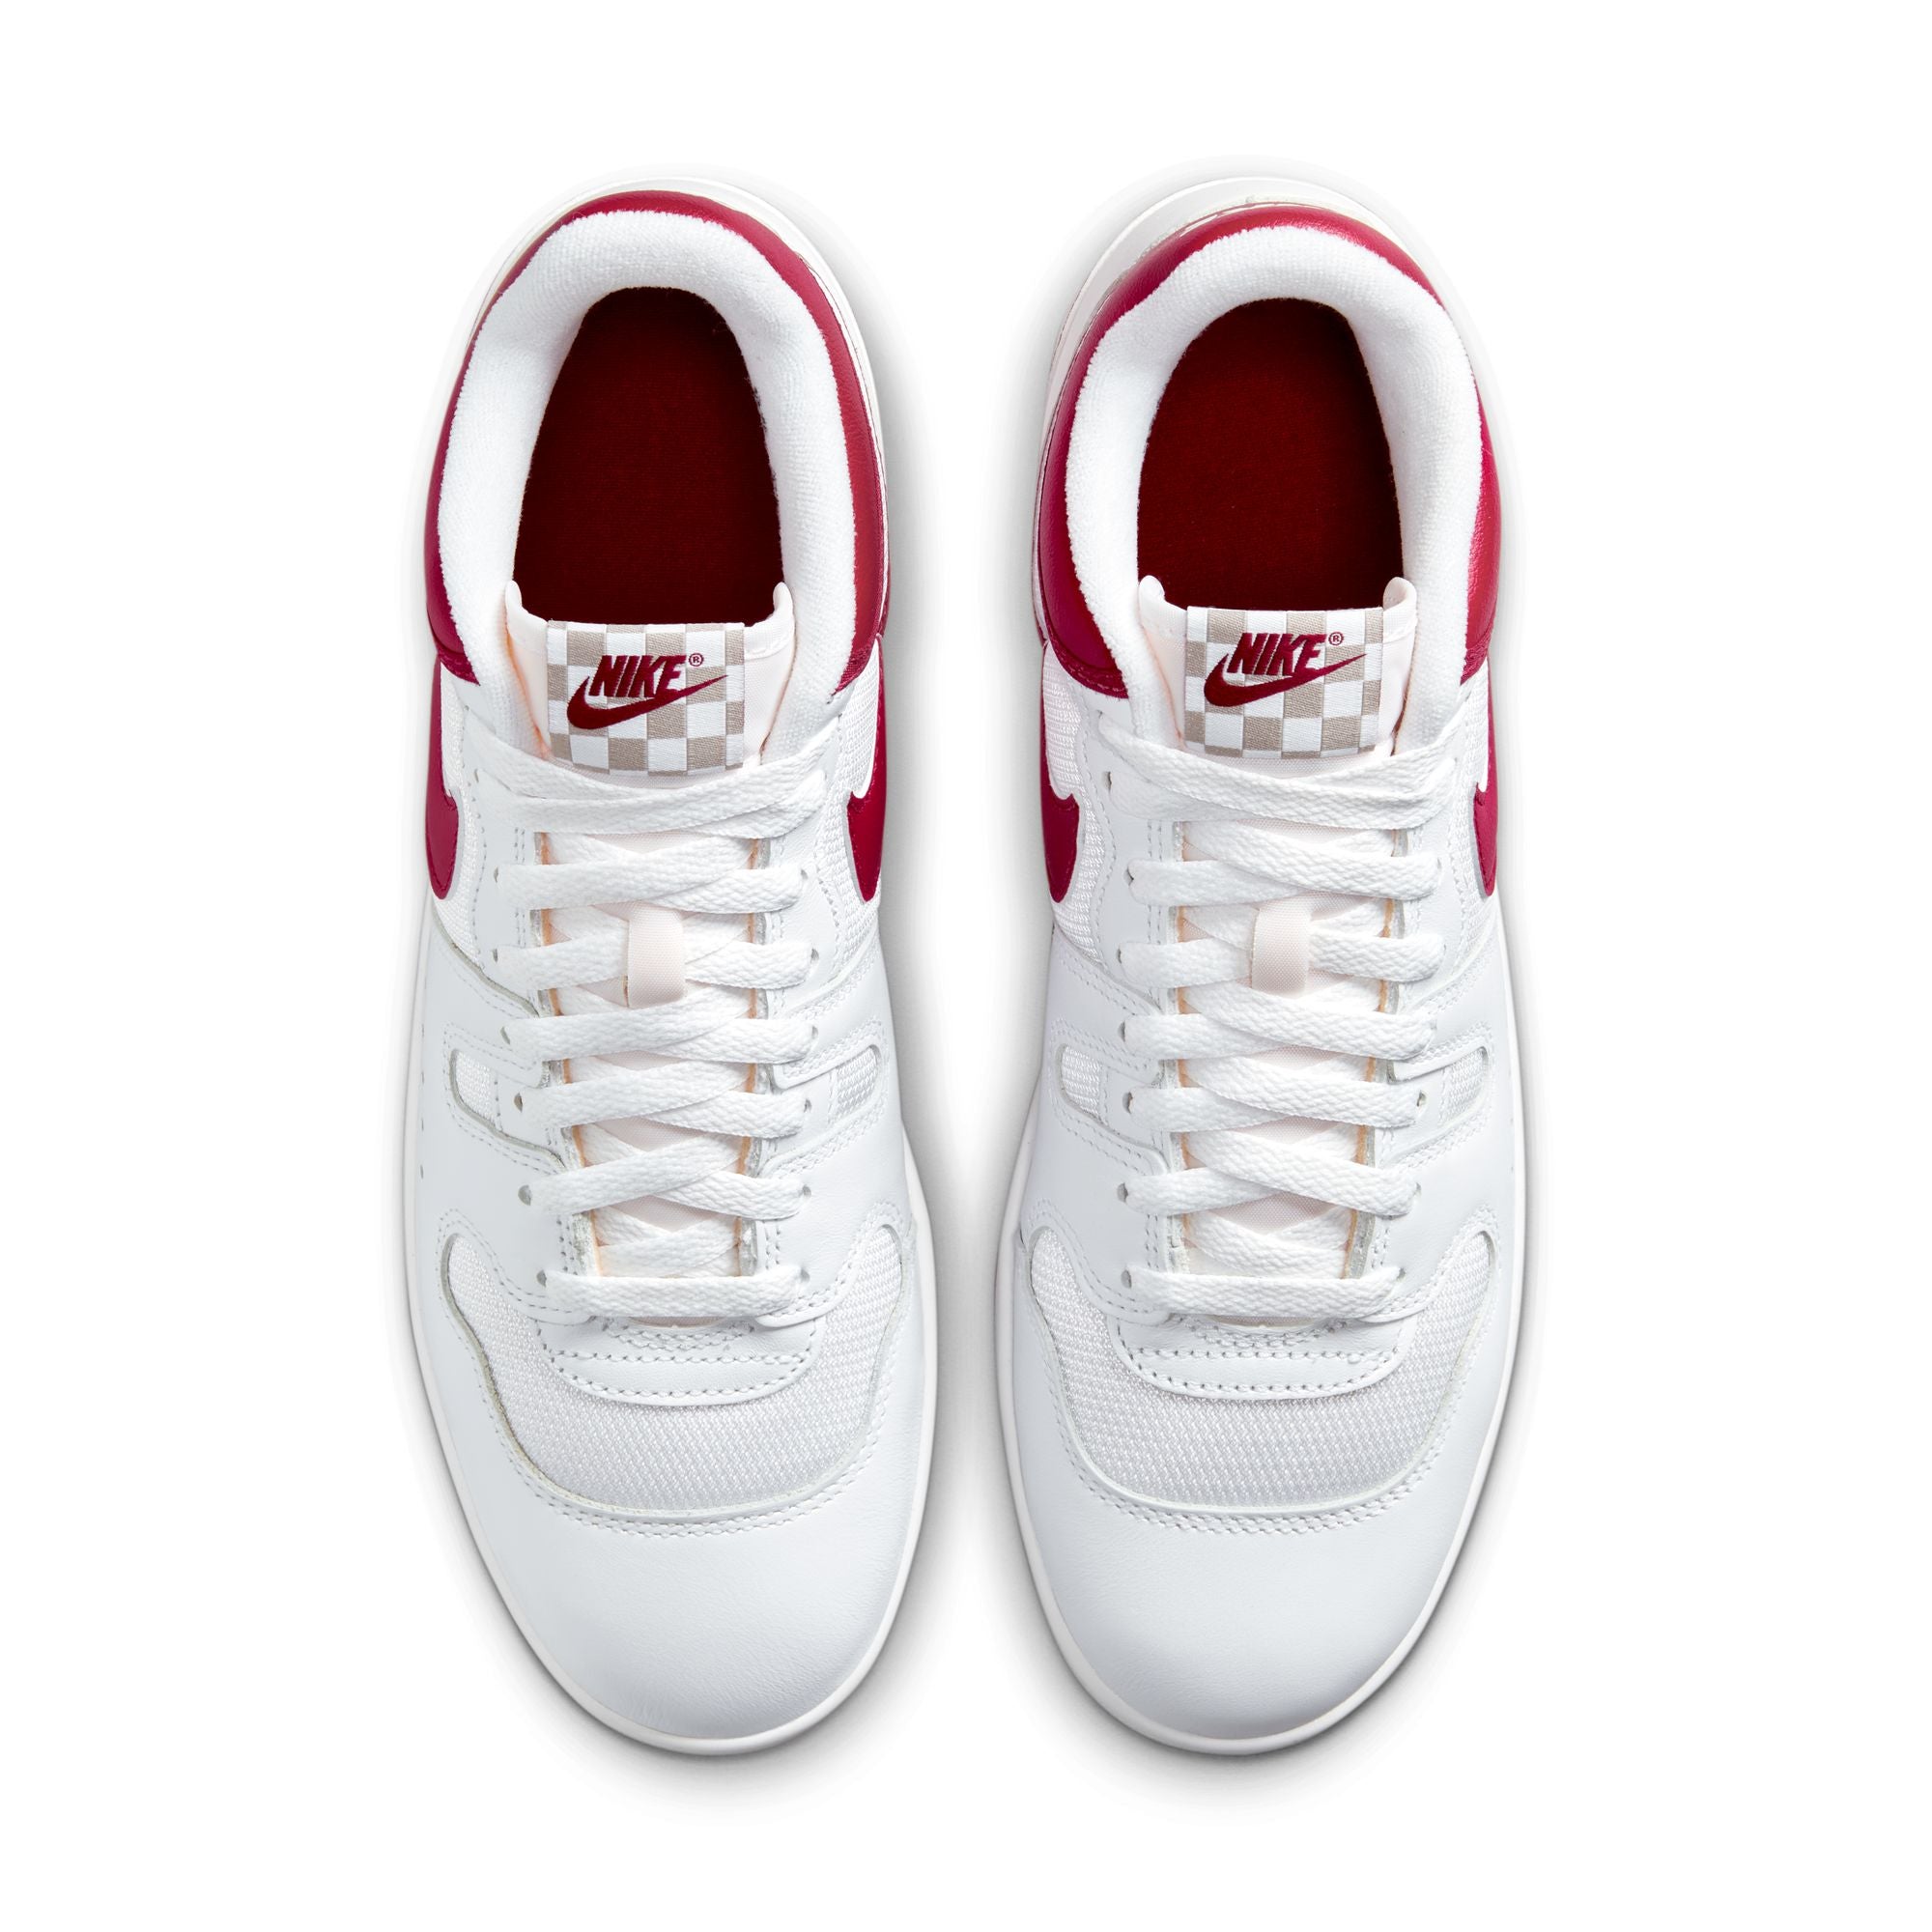 NIKE - Nike Attack Qs Sp - (White/Red Crush-White) – DSMG E-SHOP